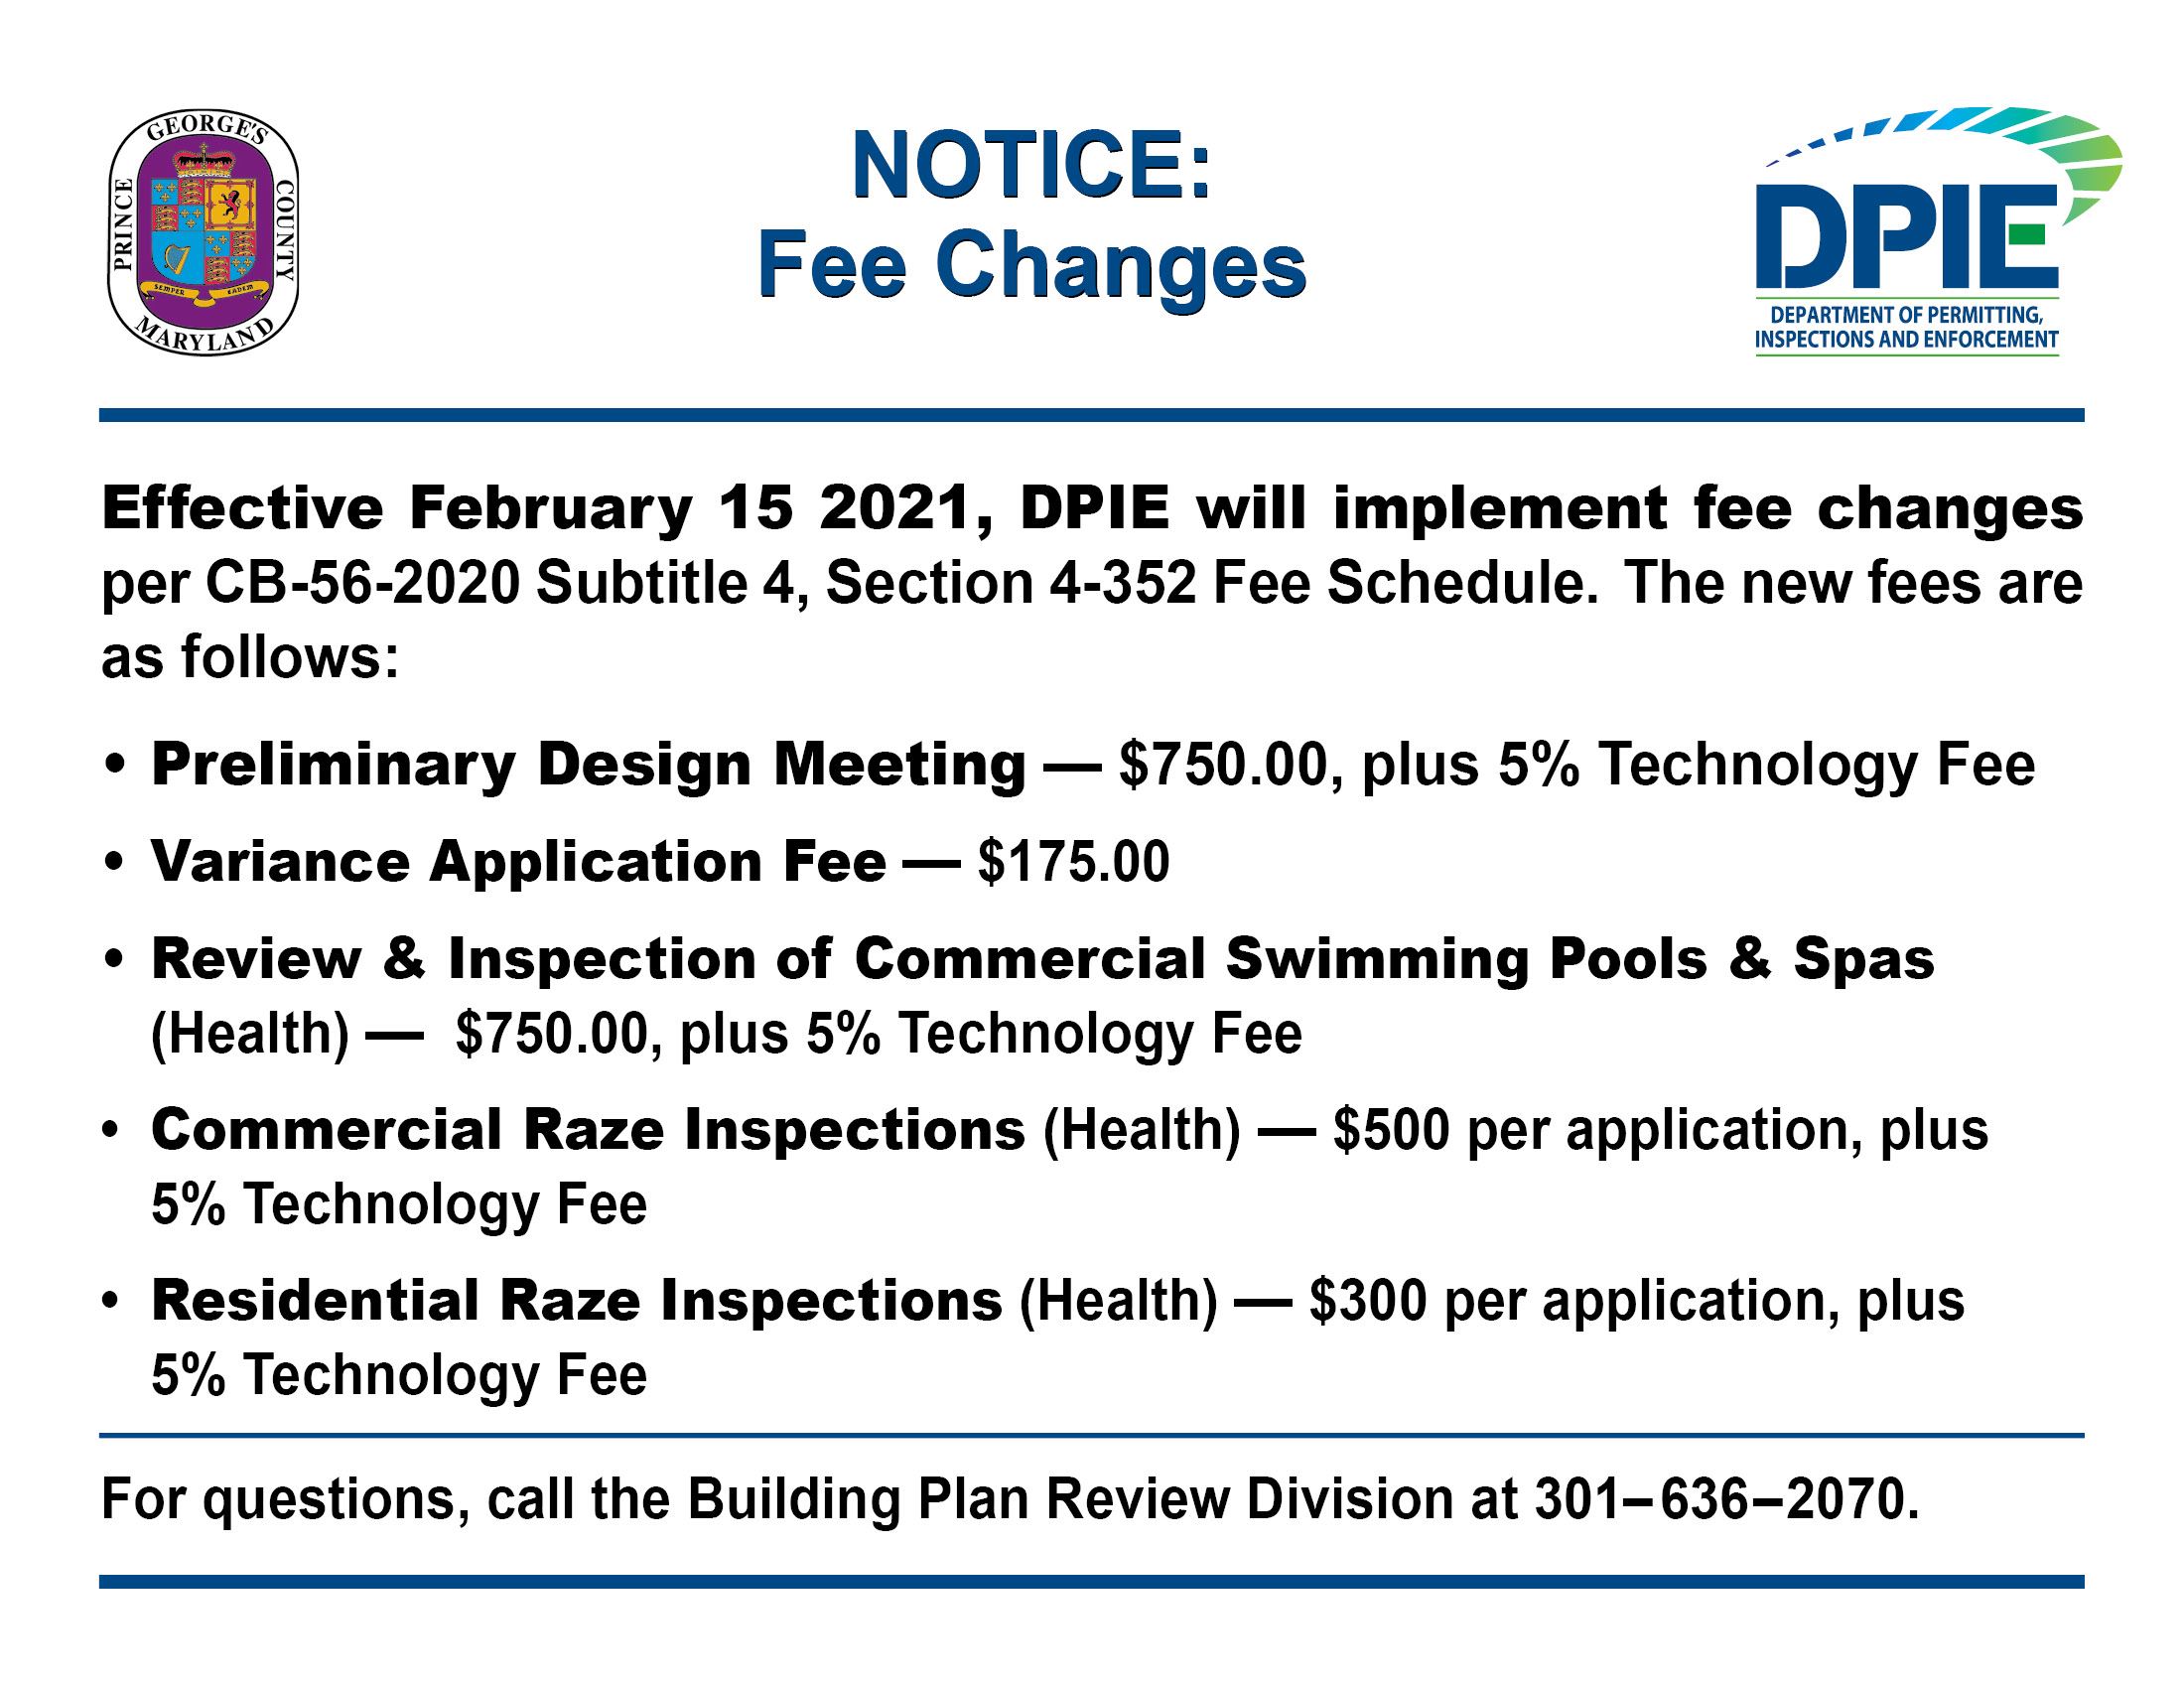 DPIE Fee Changes Feb 15 2021